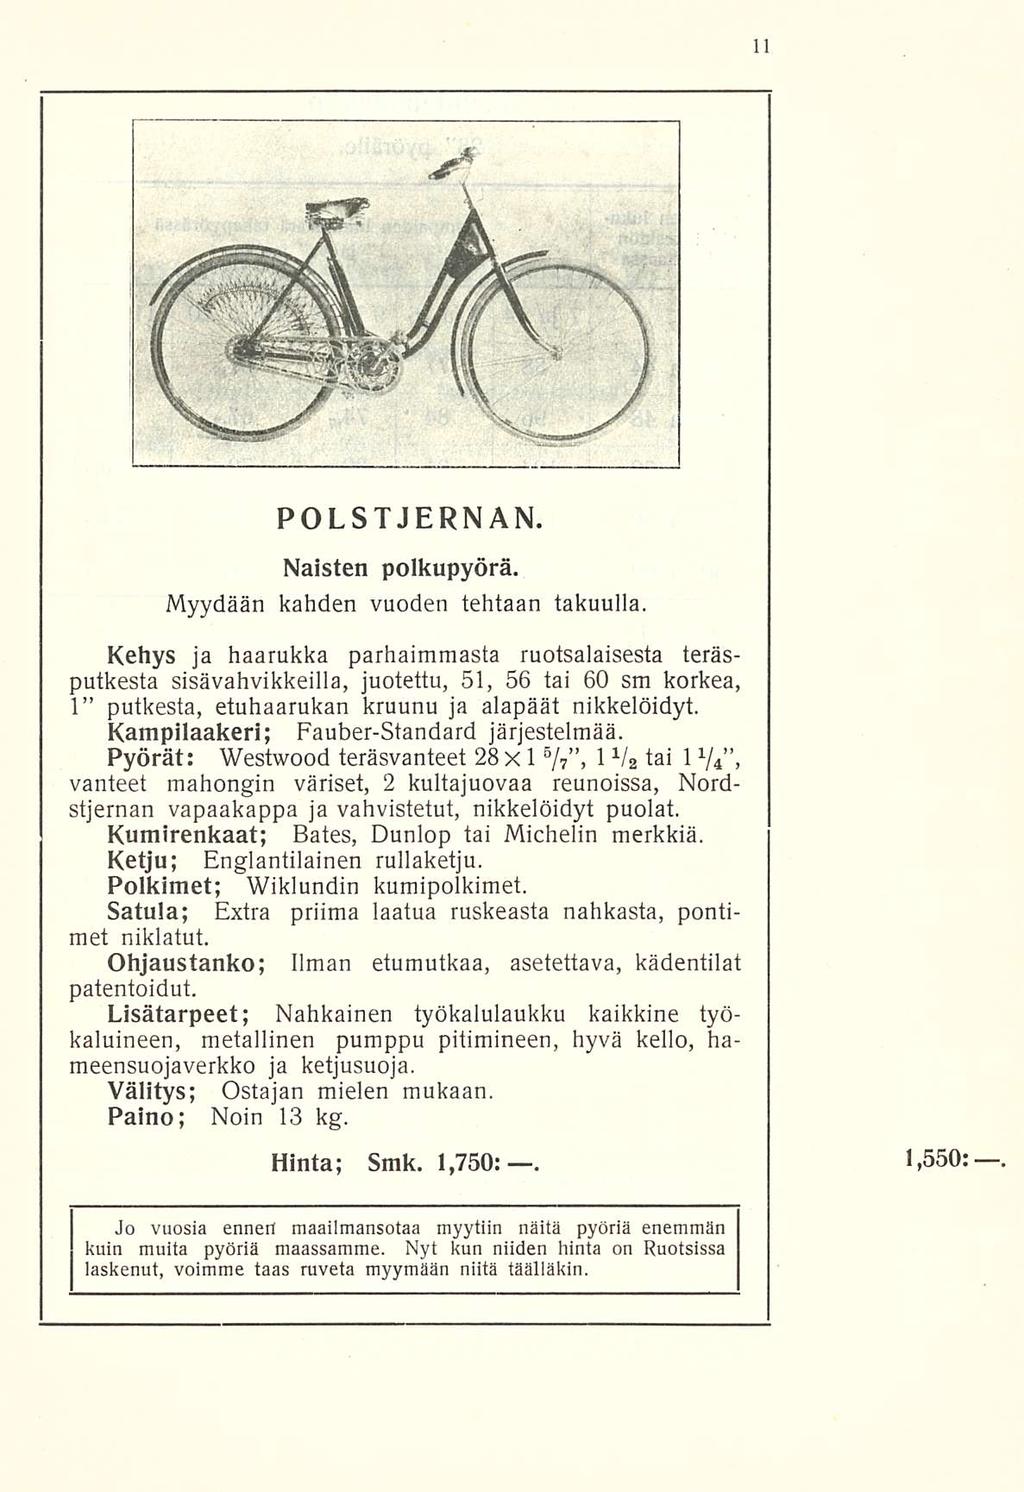 POLSTJERNAN. Naisten polkupyörä. Myydään kahden vuoden tehtaan takuulla.